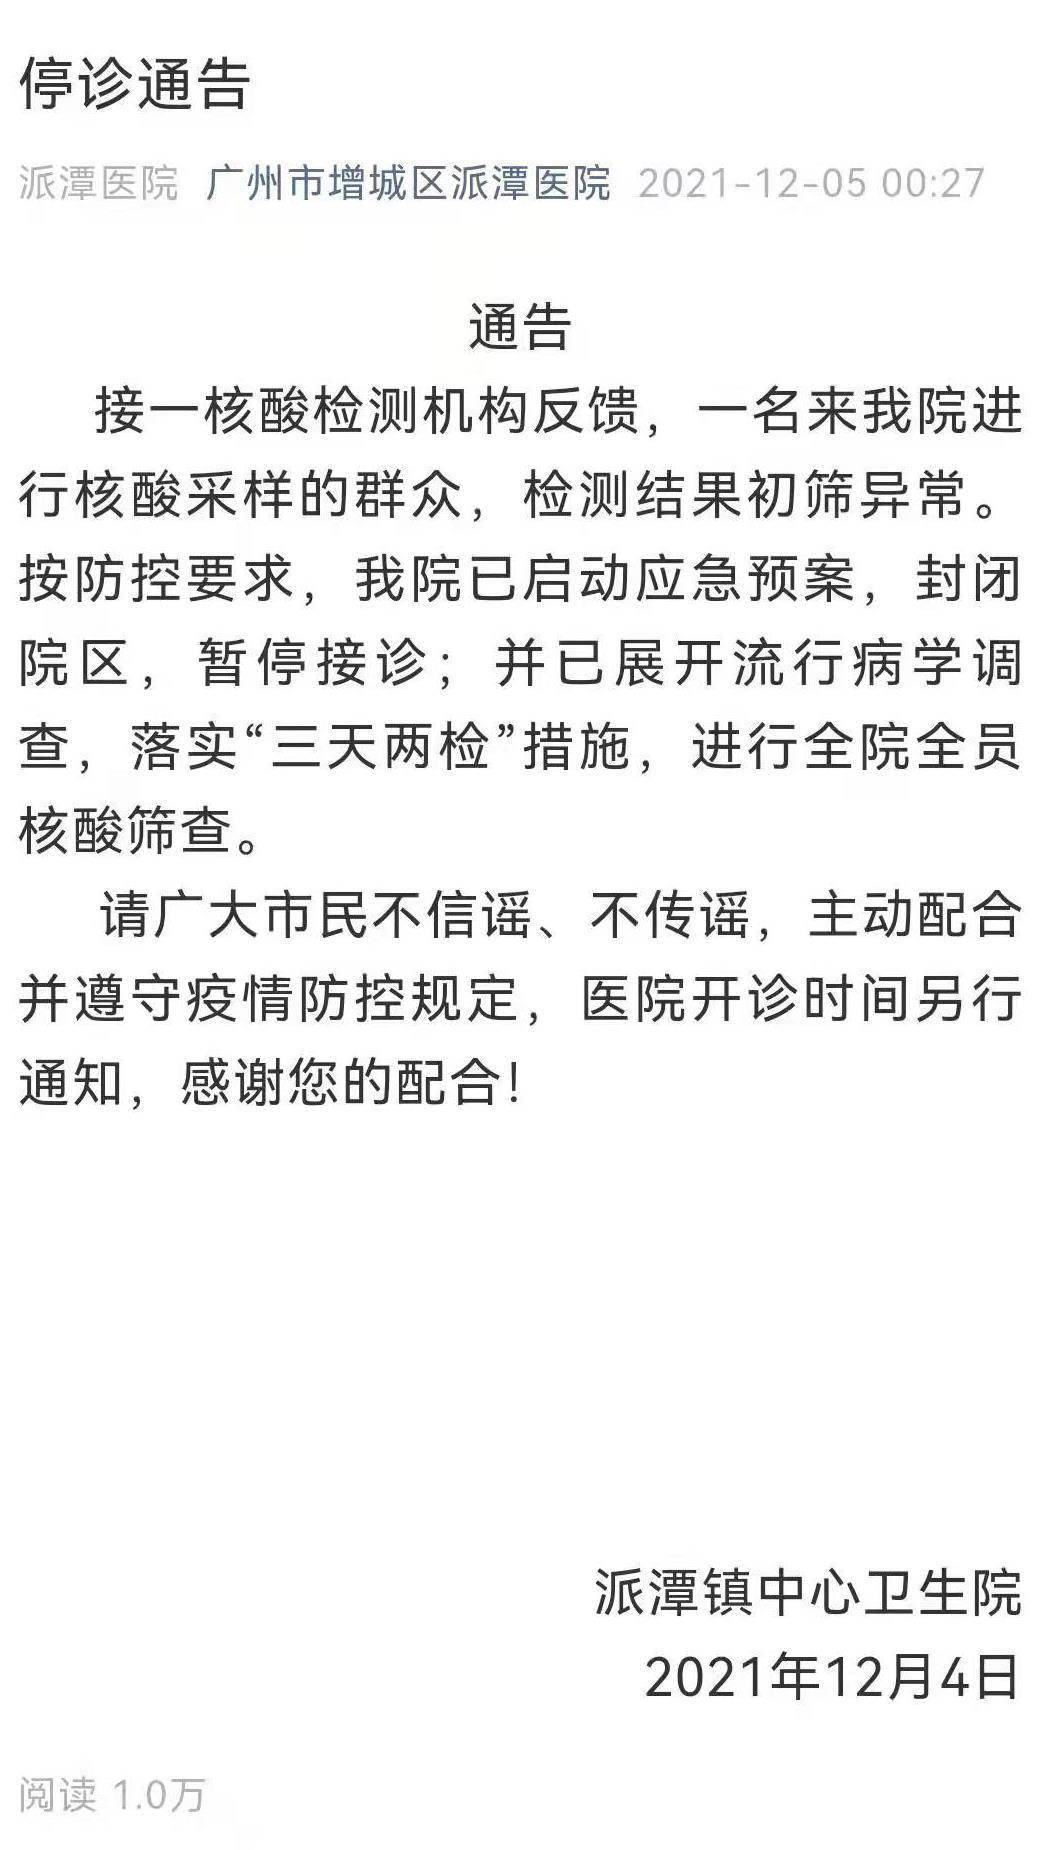 初筛|一人核酸初筛异常，广州增城区派潭医院发布停诊通告